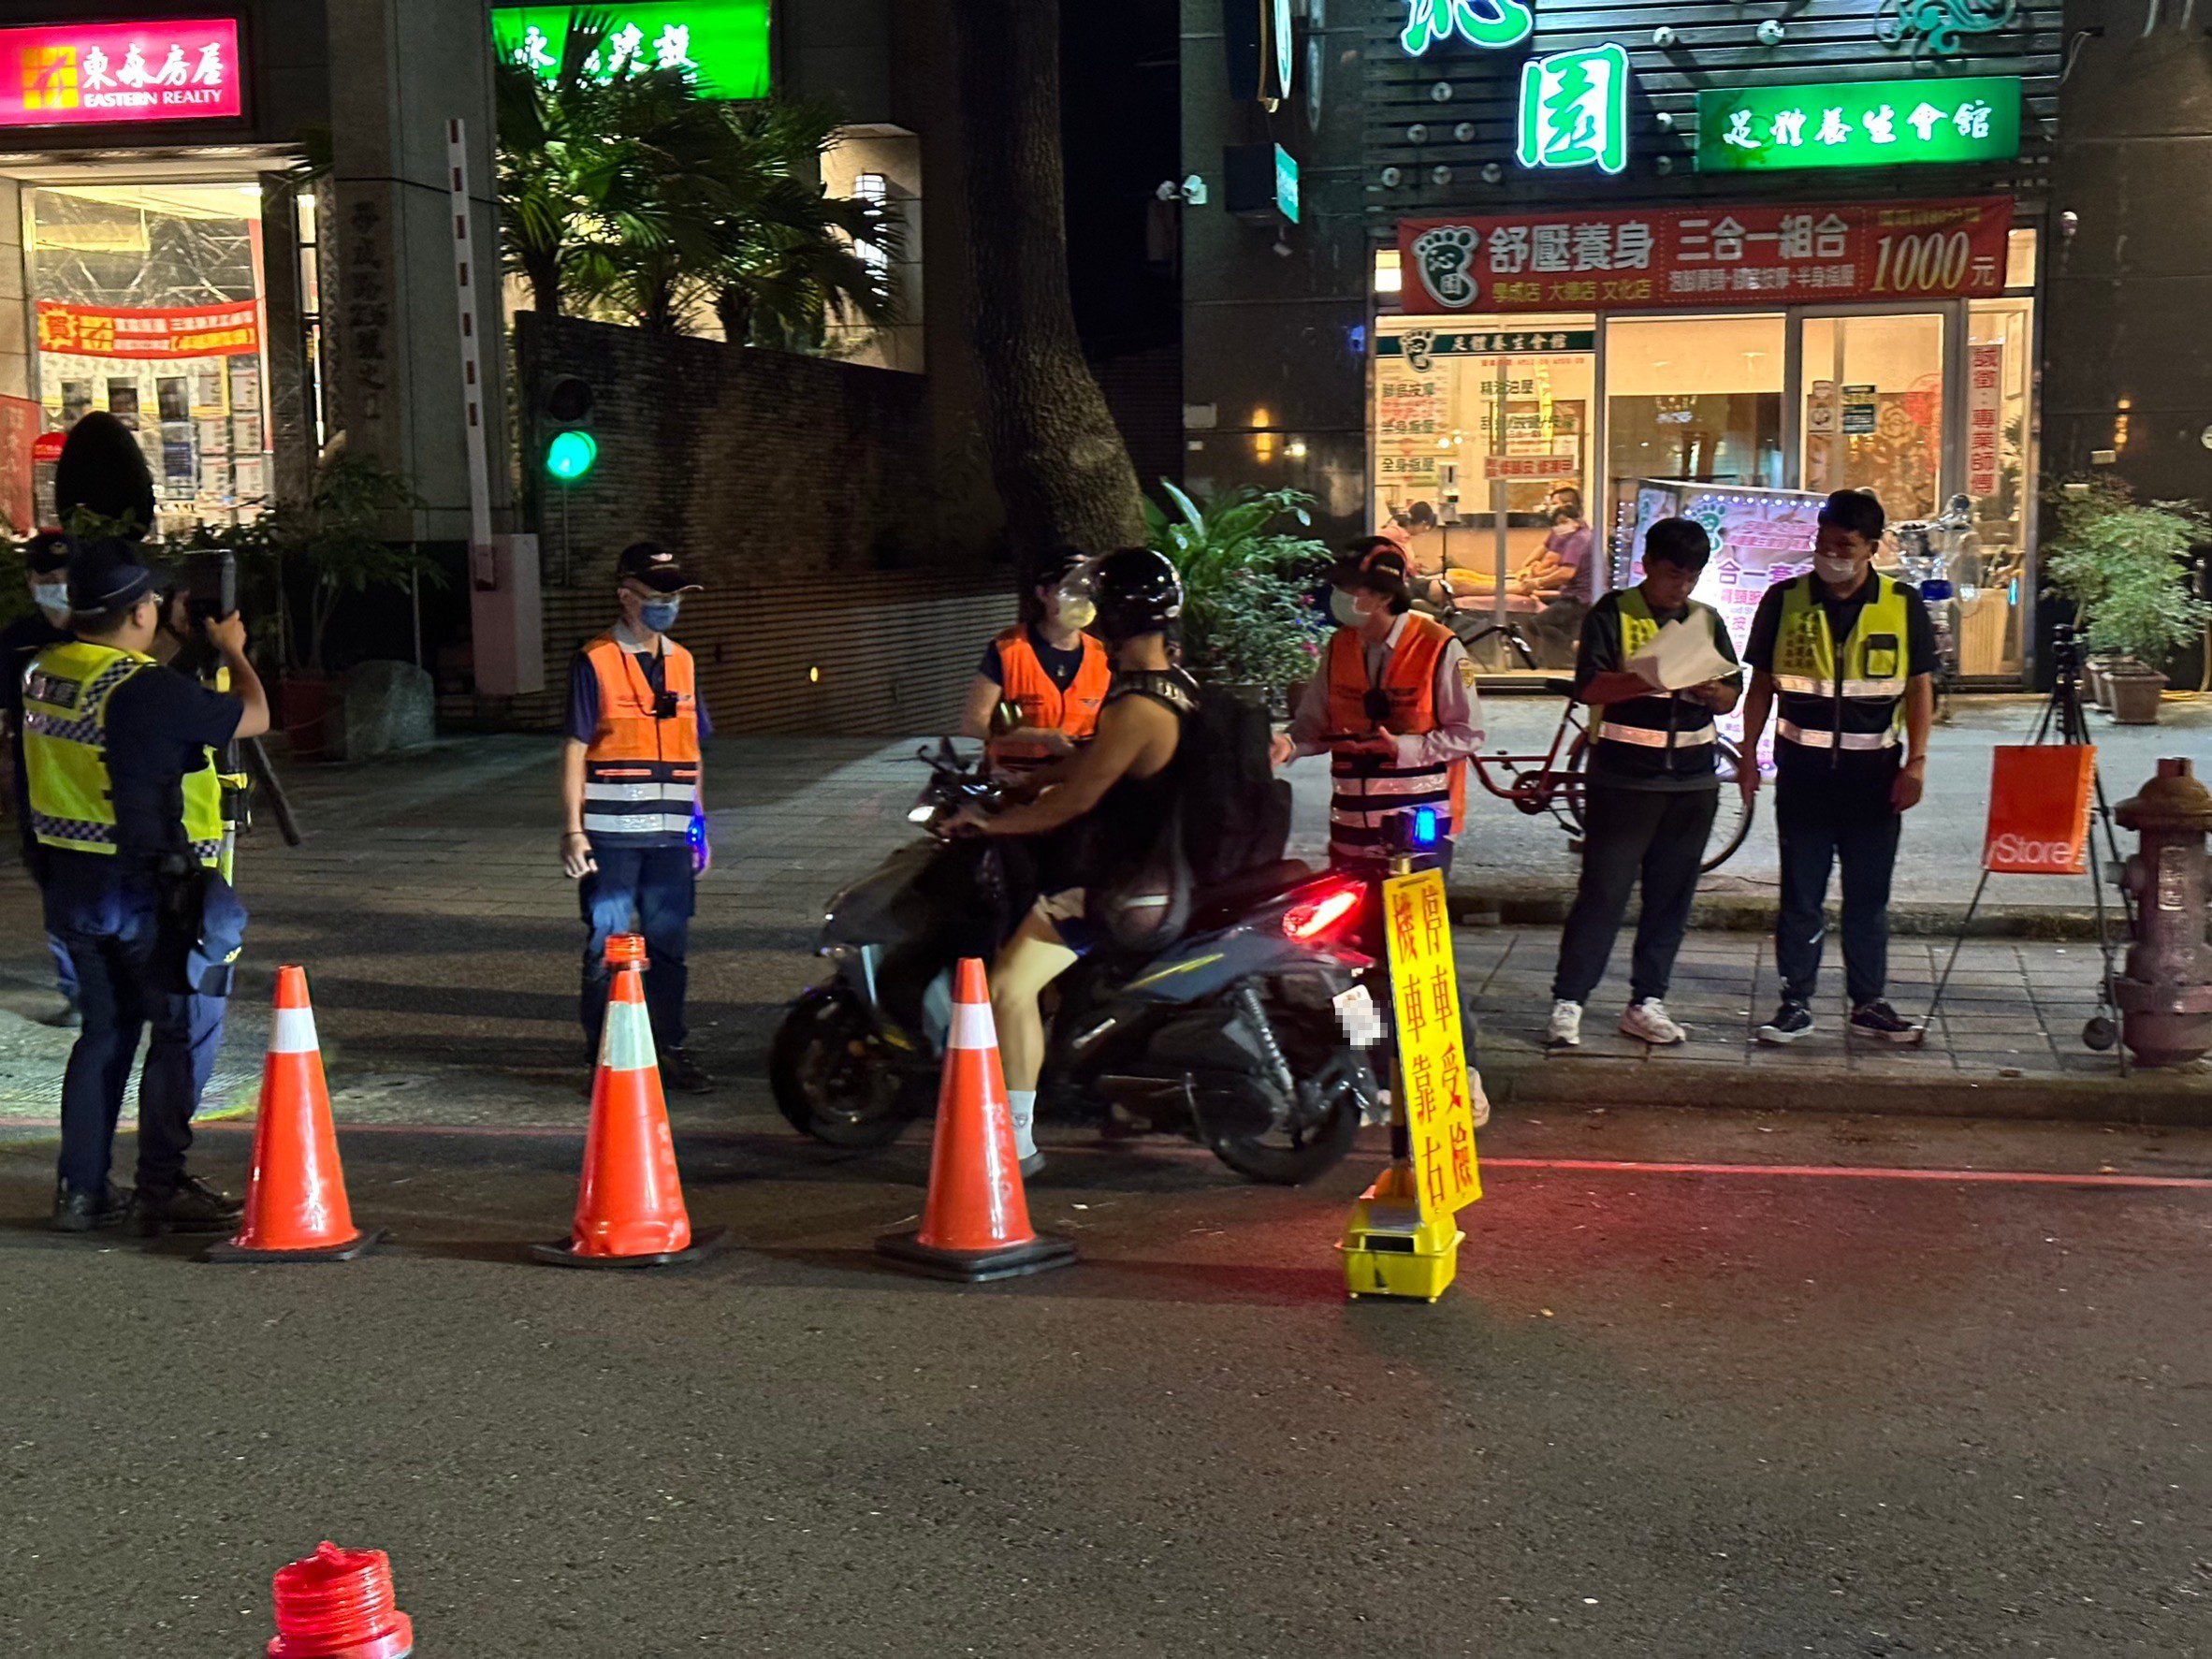 四市環保大聯手 清潔隊員獎金大調升 噪音車輛管制提案獲共識 - 早安台灣新聞 | Morning Taiwan News